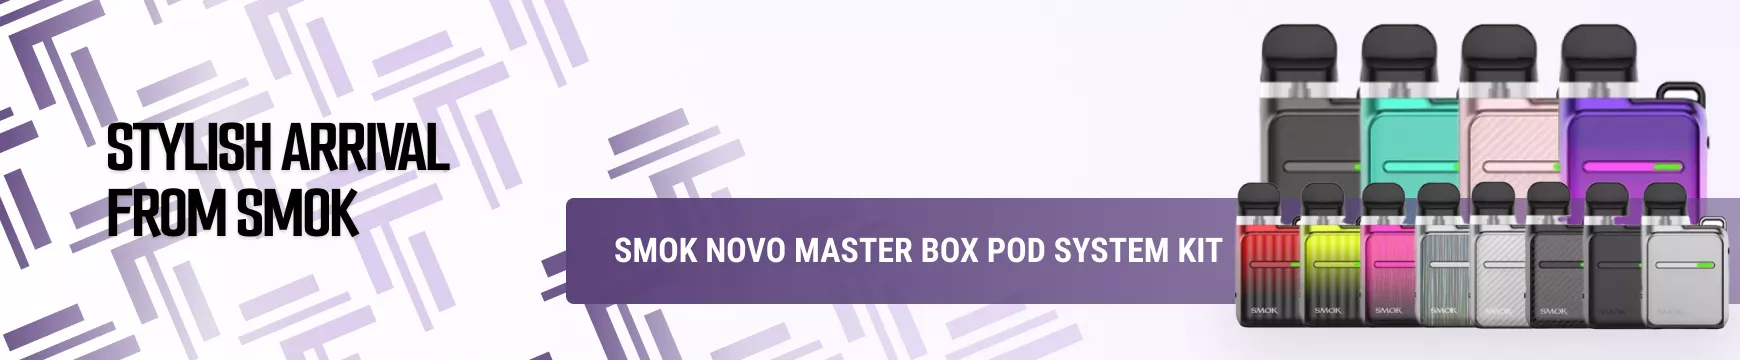 https://vawus.com/ensmok-novo-master-box-pod-system-kit